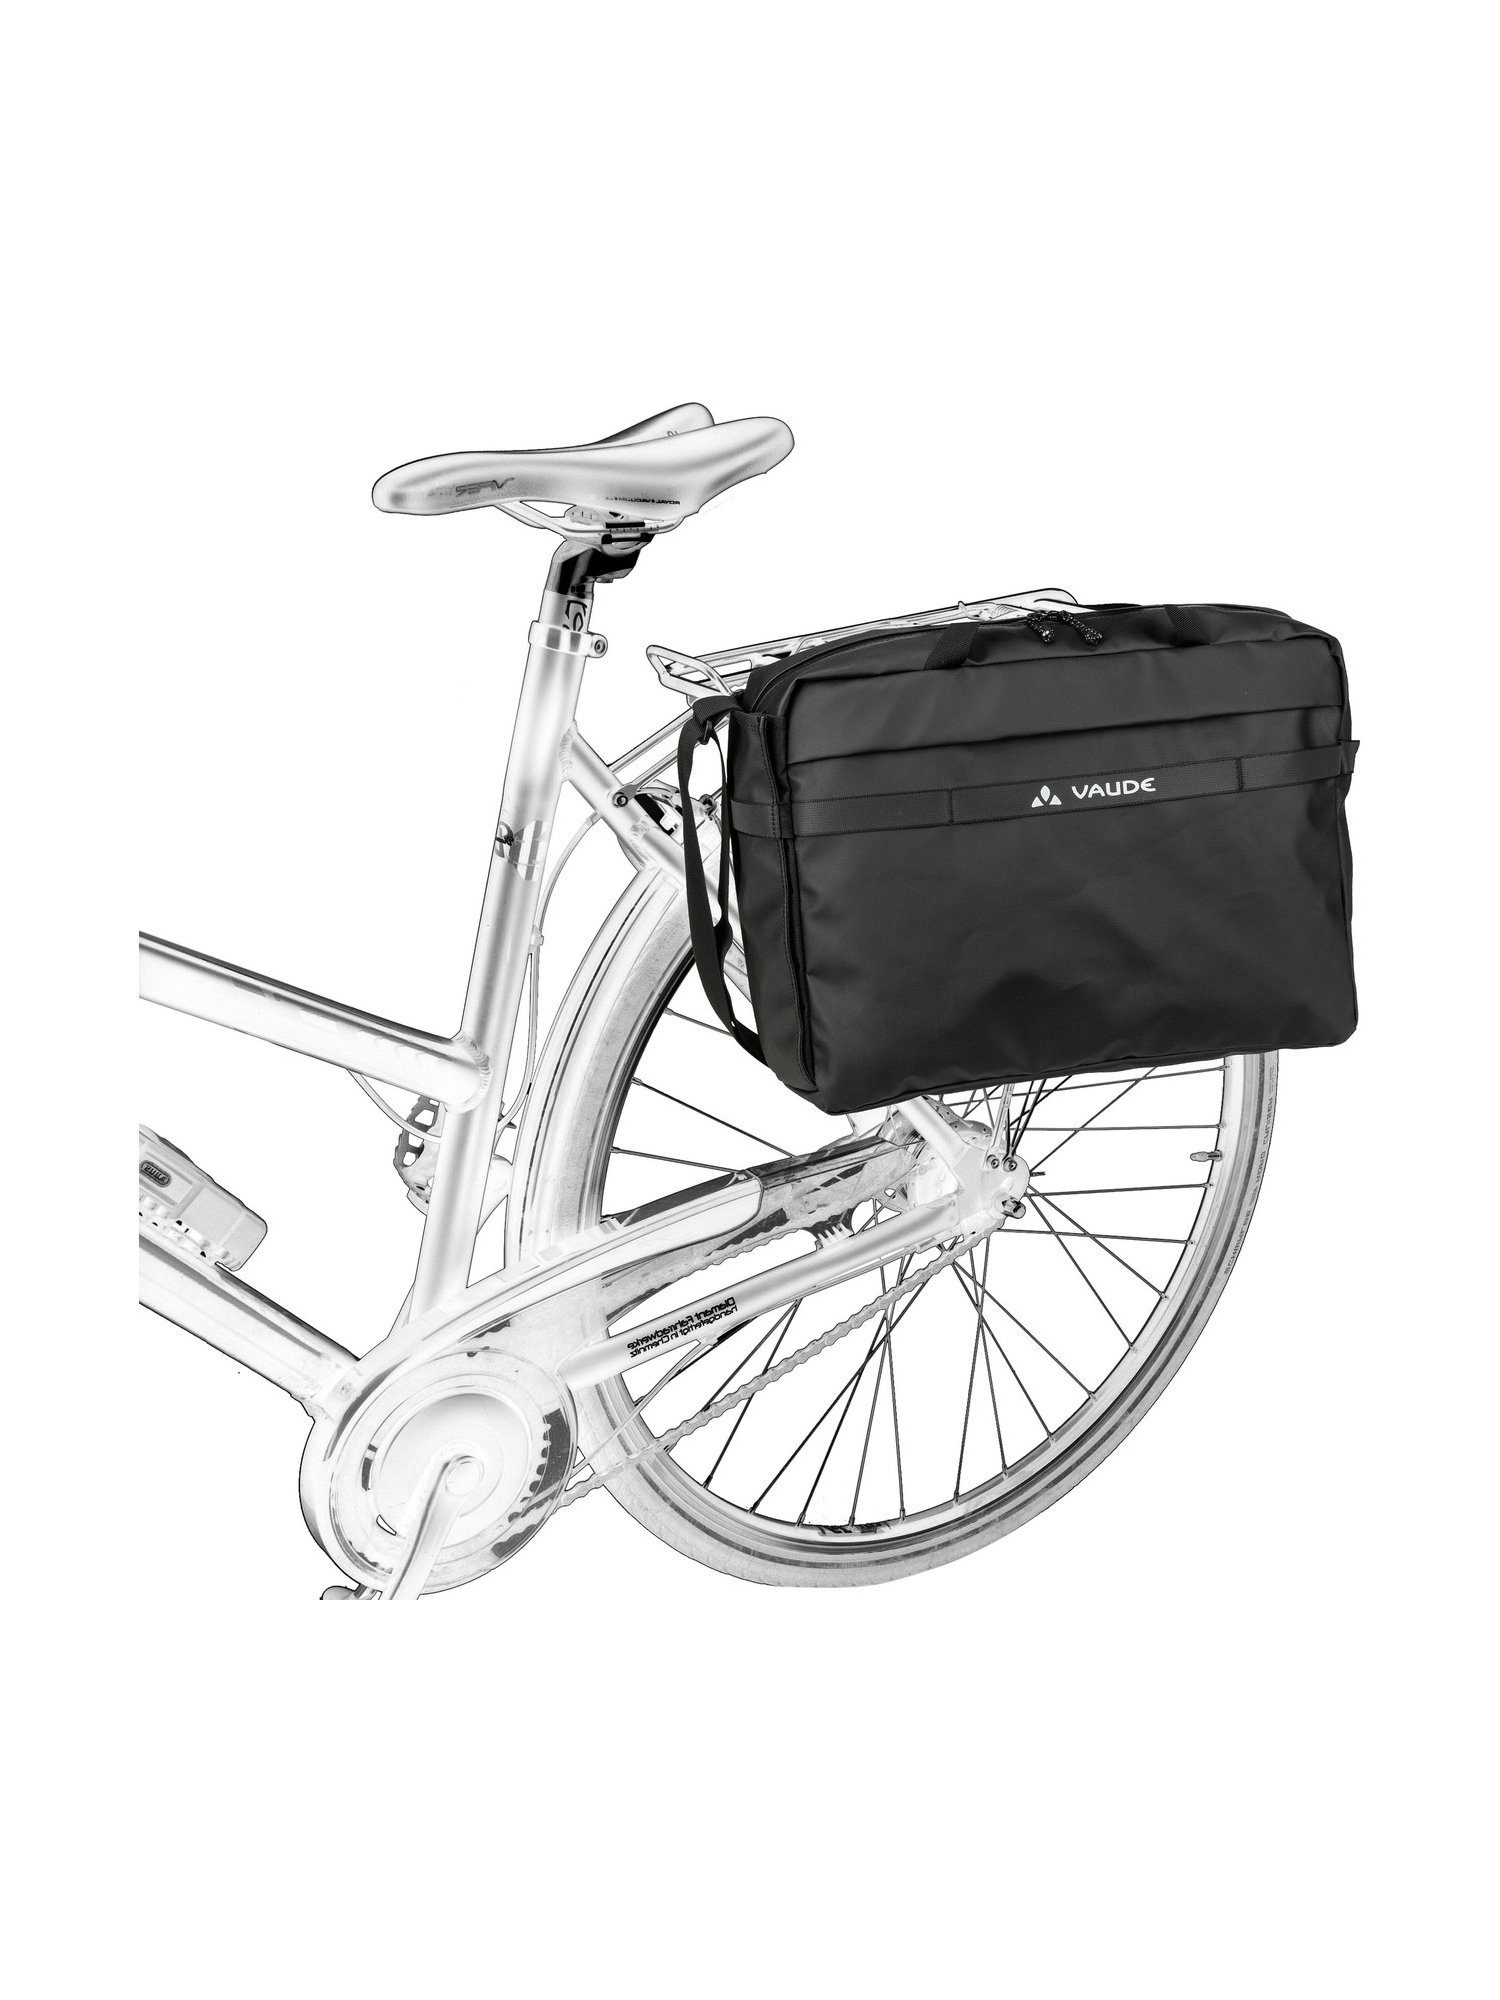 17 VAUDE Fahrradtasche Mineo Commuter Black Briefcase